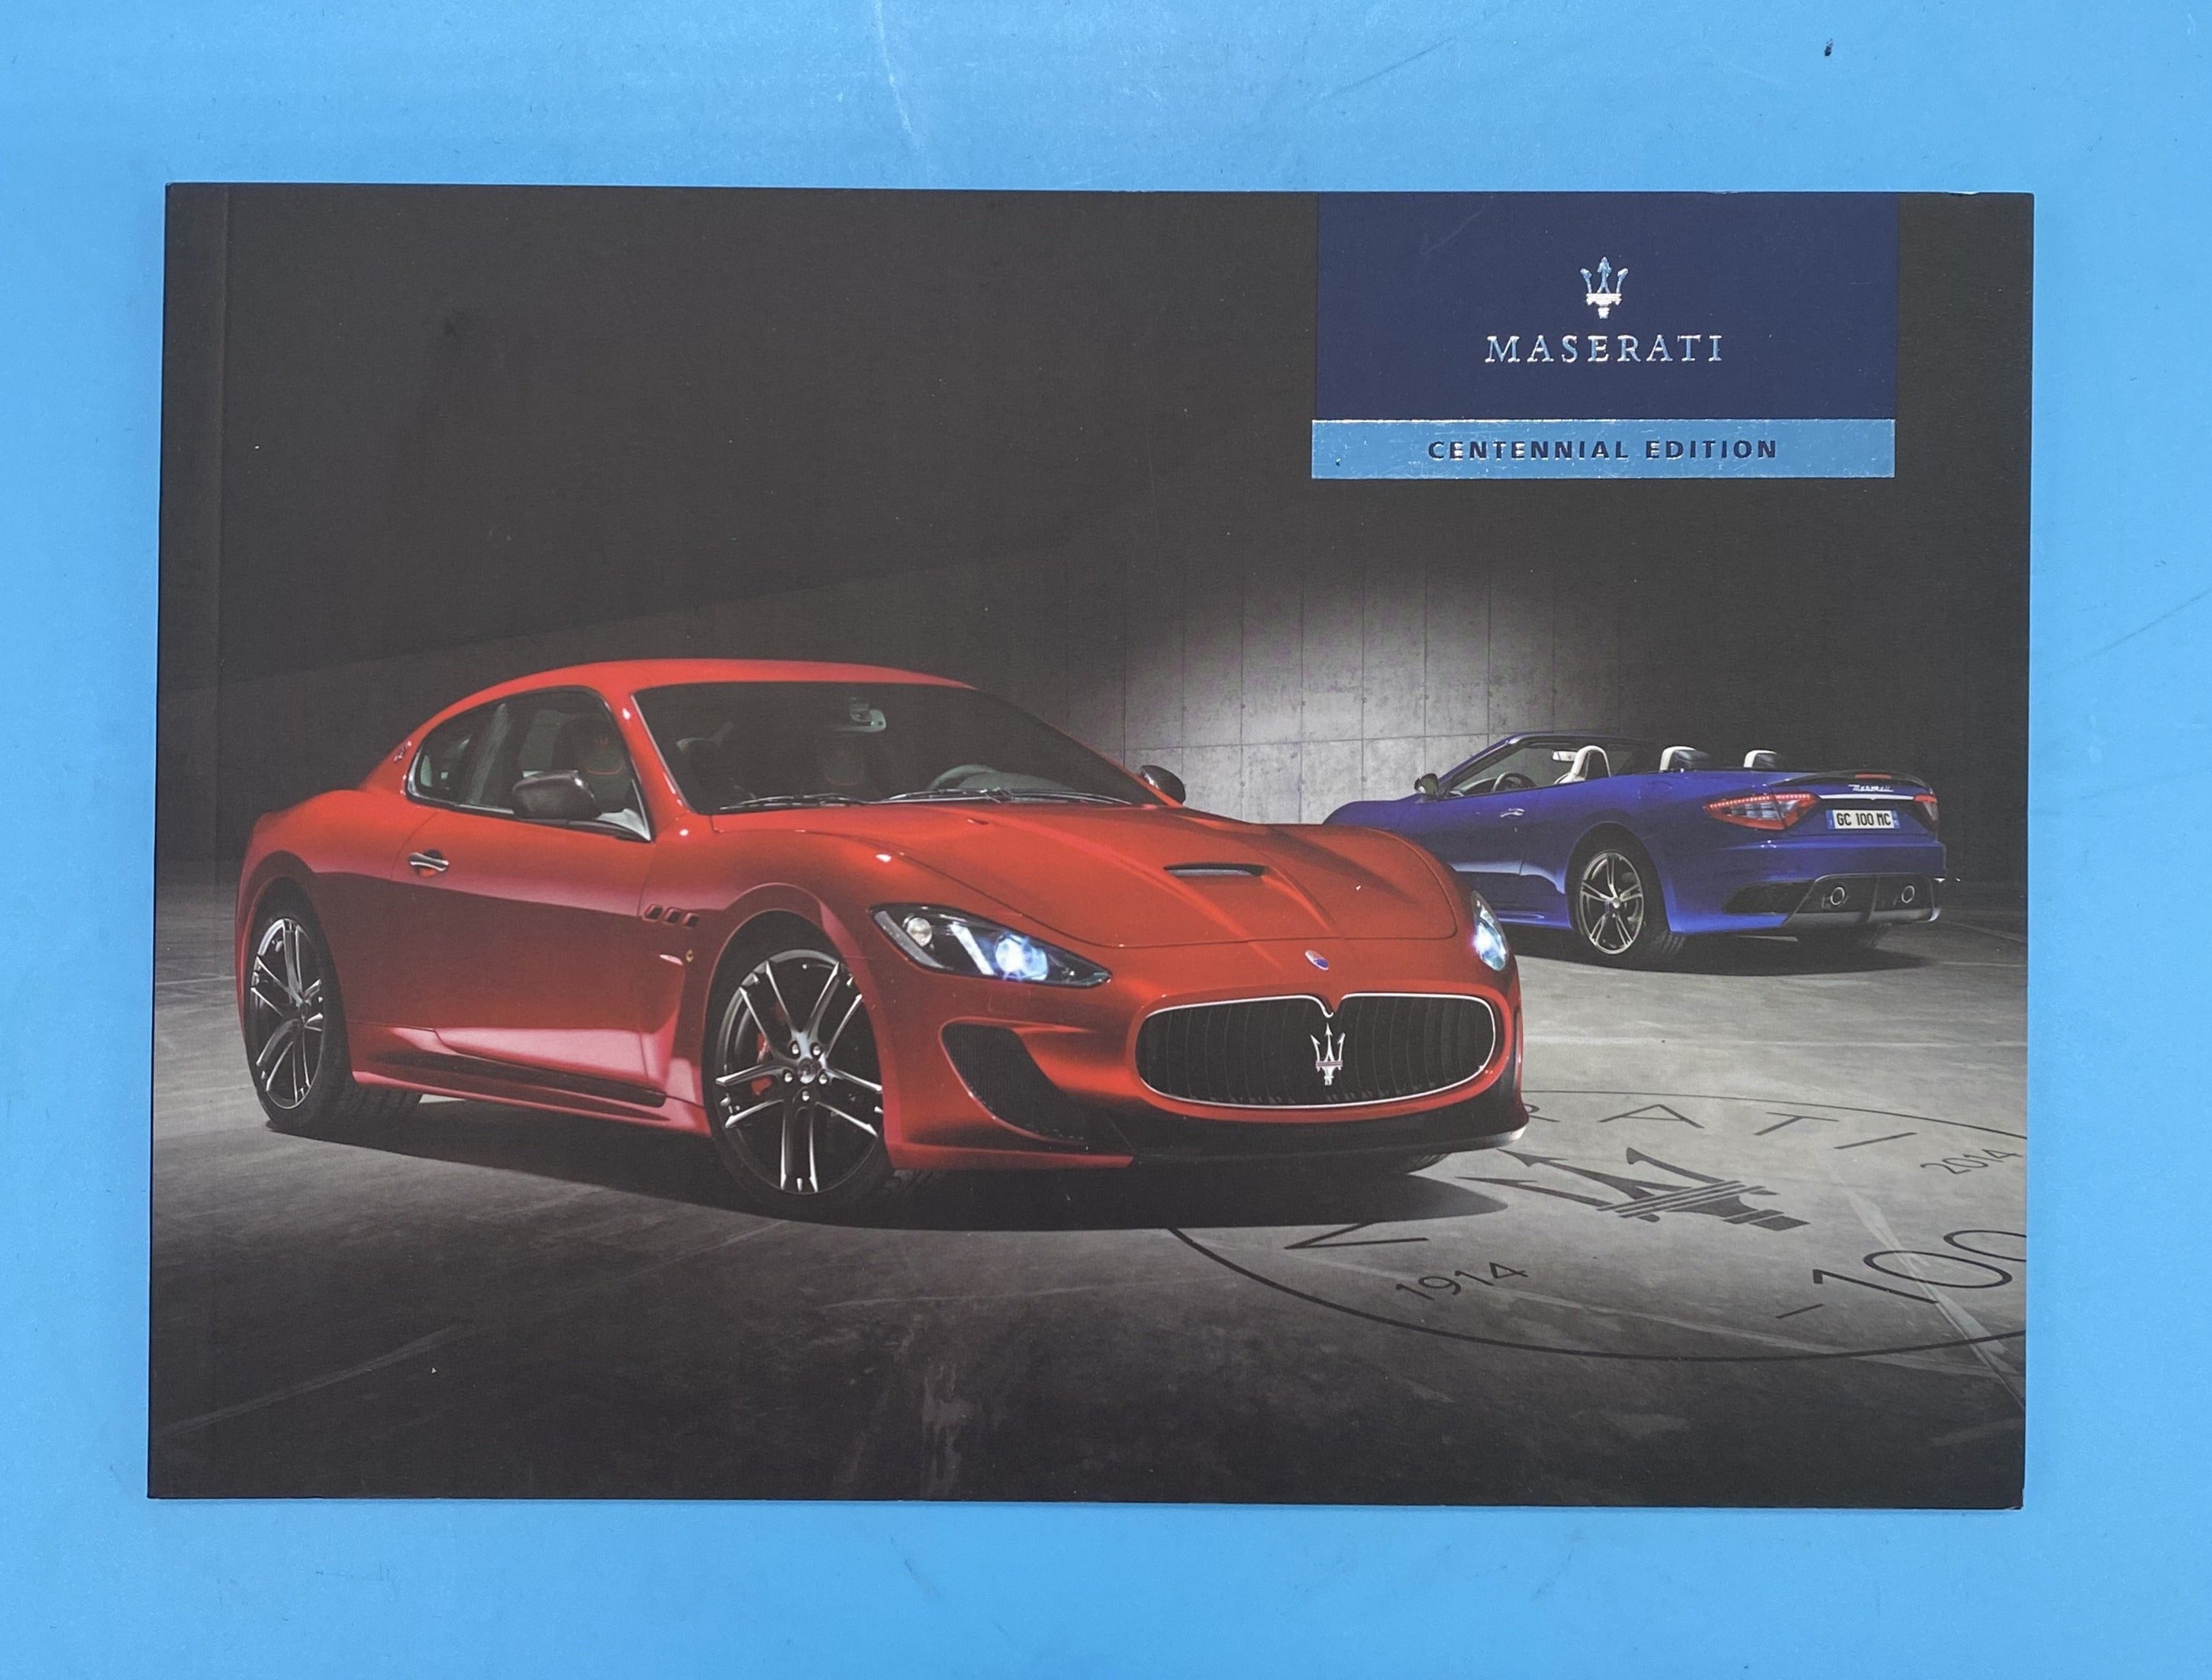 Maserati Continental Edition Brochure - 920006679